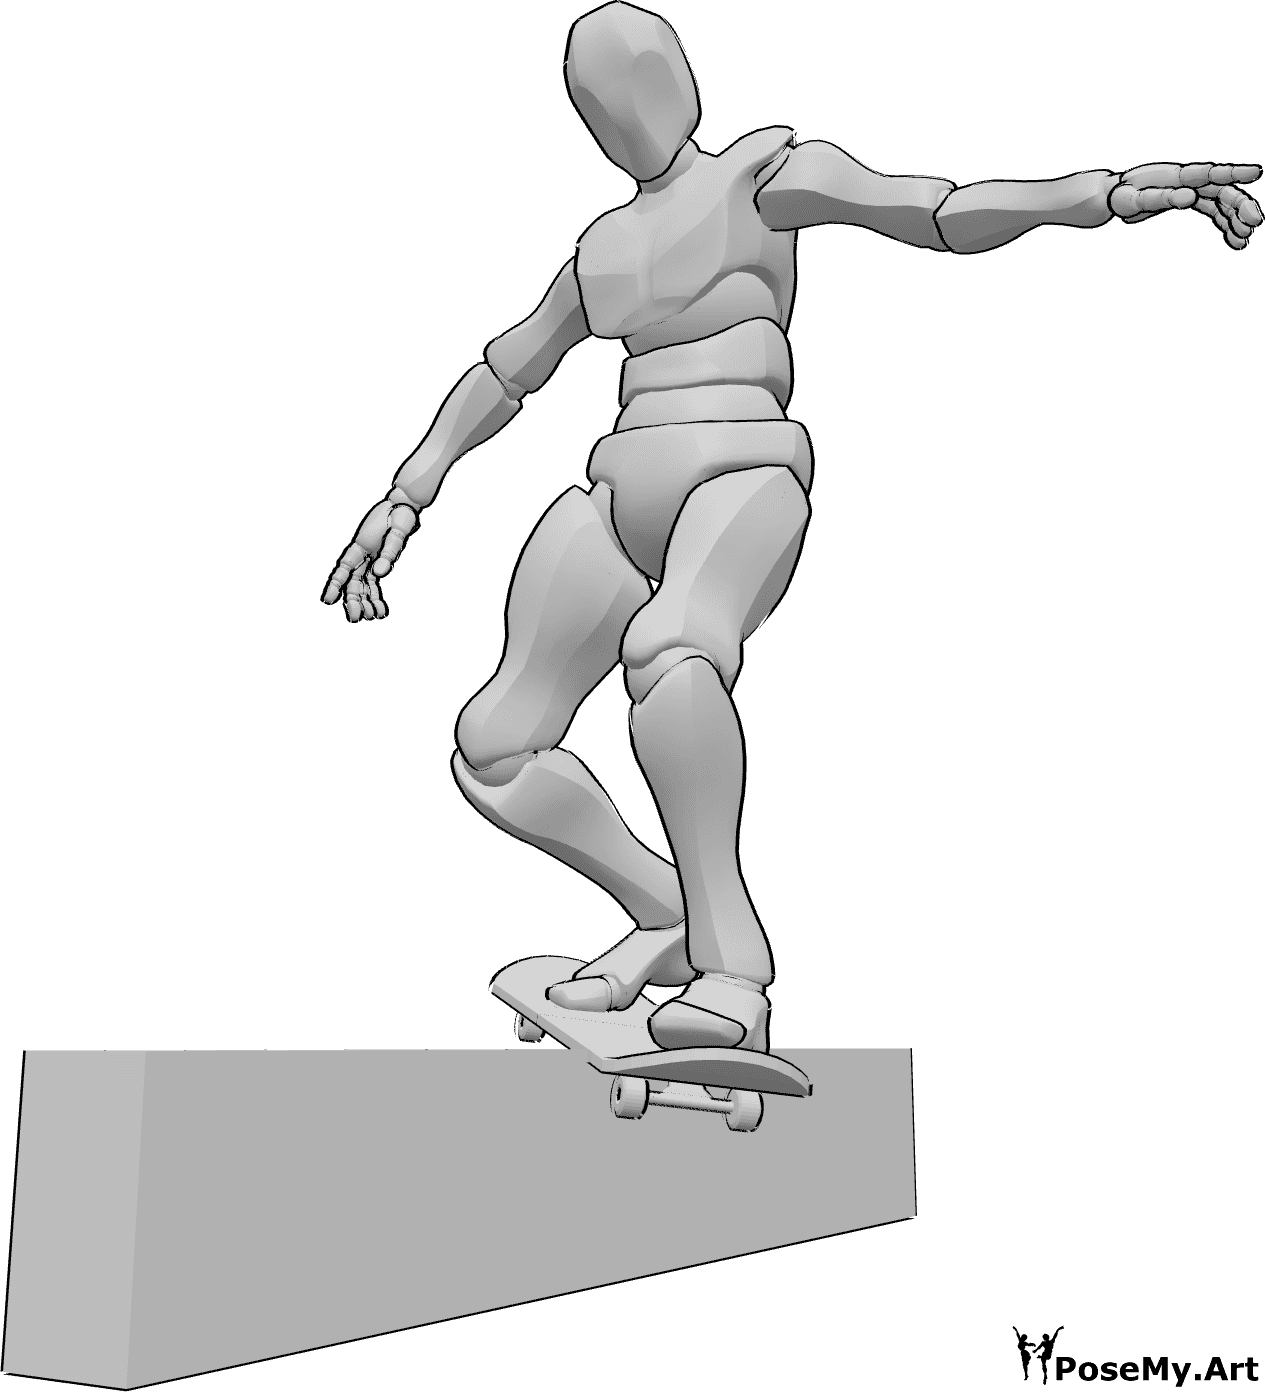 Referência de poses- Pose de deslizamento do corrimão do skate - Homem desliza sobre um corrimão com o seu skate, equilibrando-se com as mãos, referência de desenho de um skate